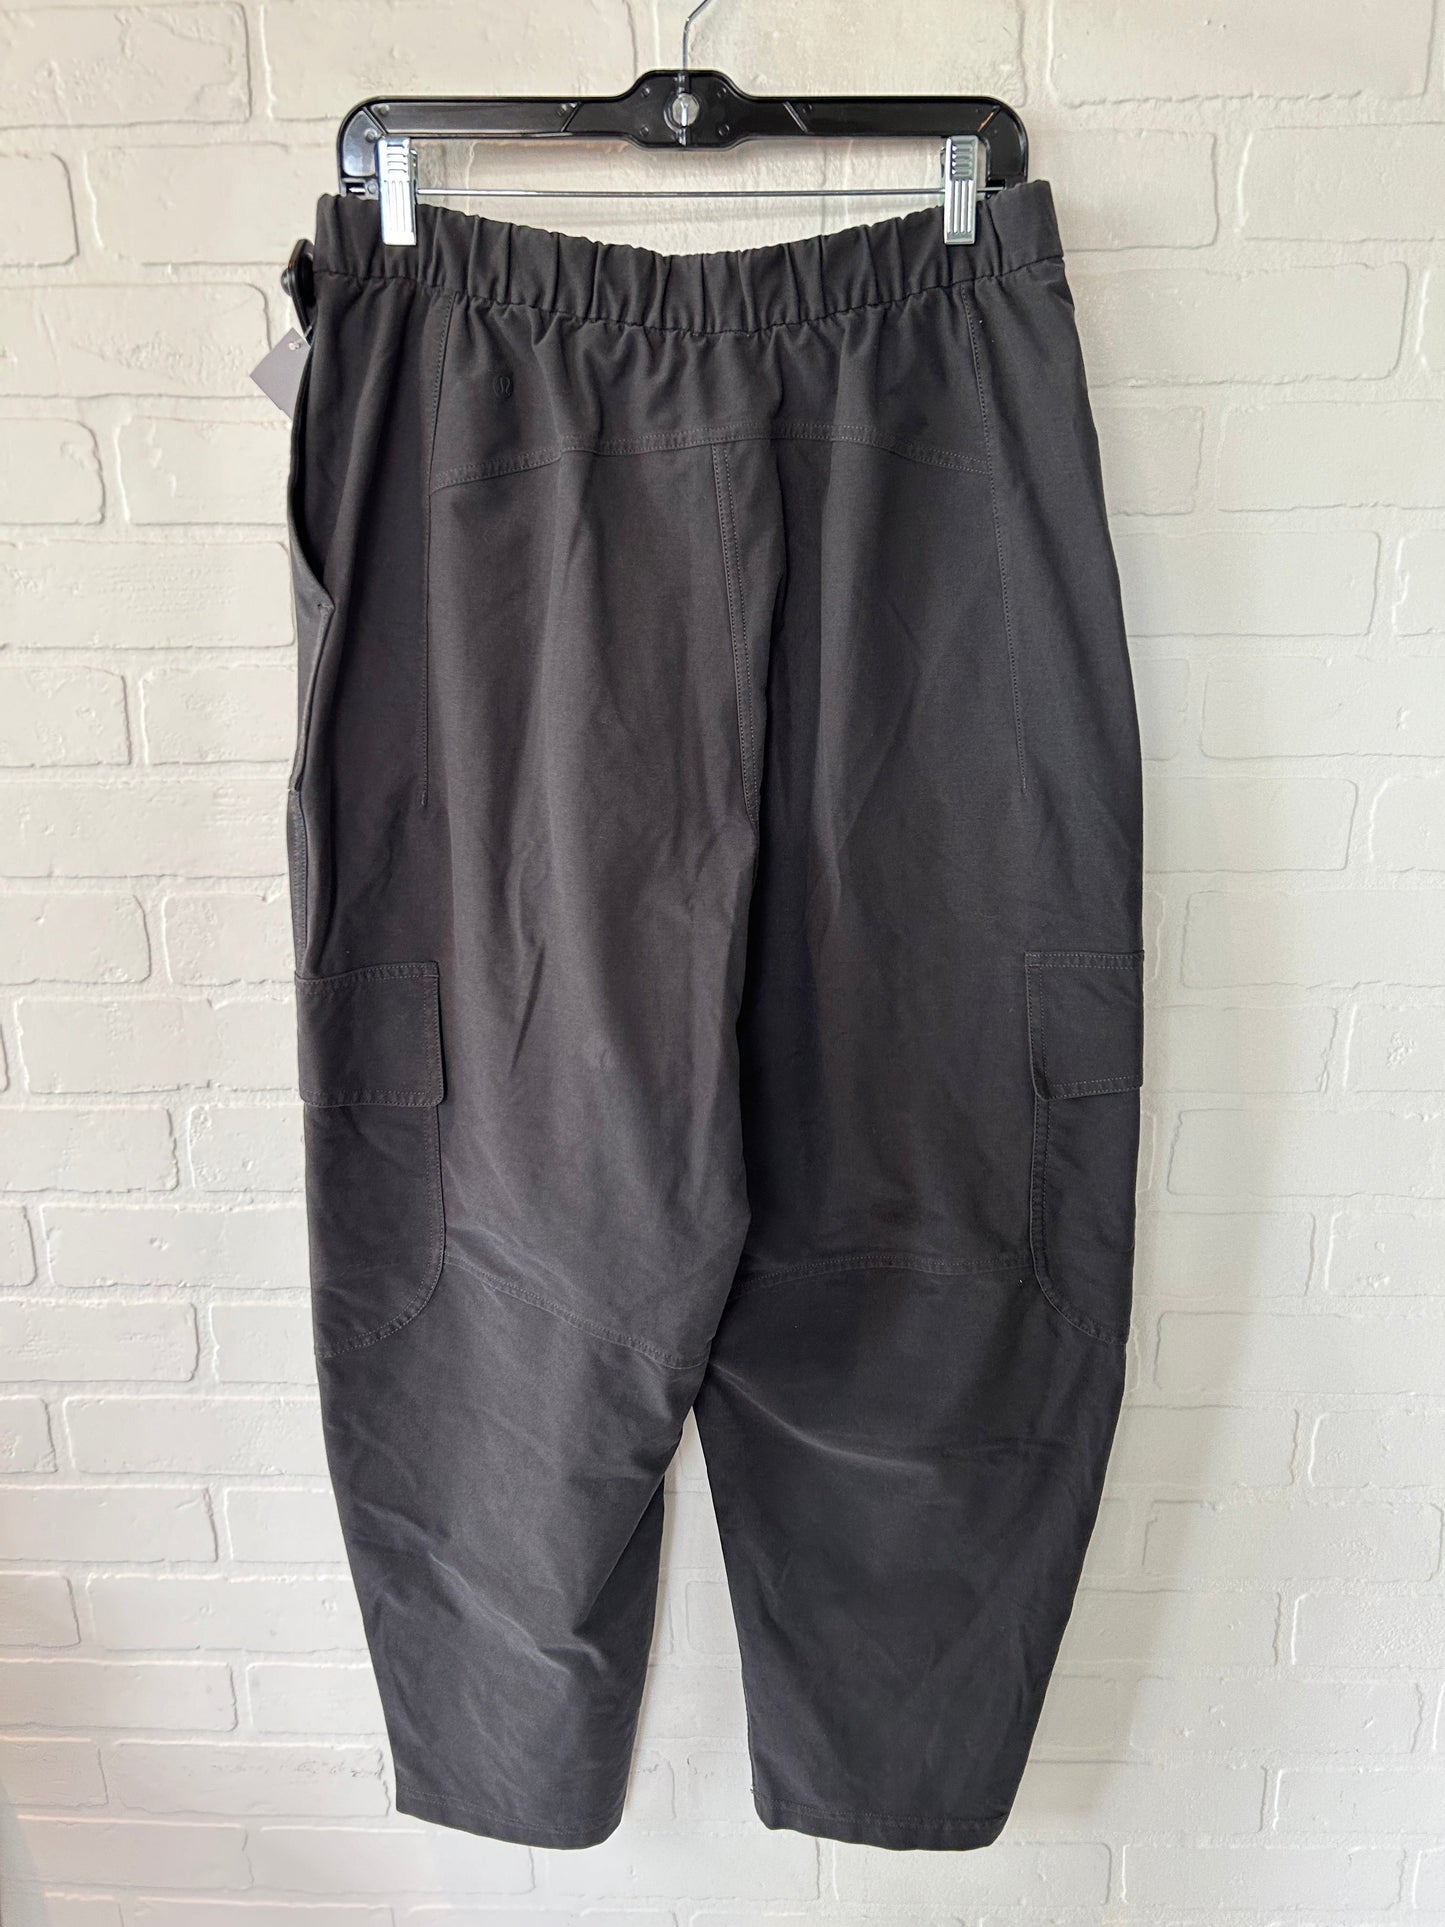 Grey Athletic Pants Lululemon, Size 12